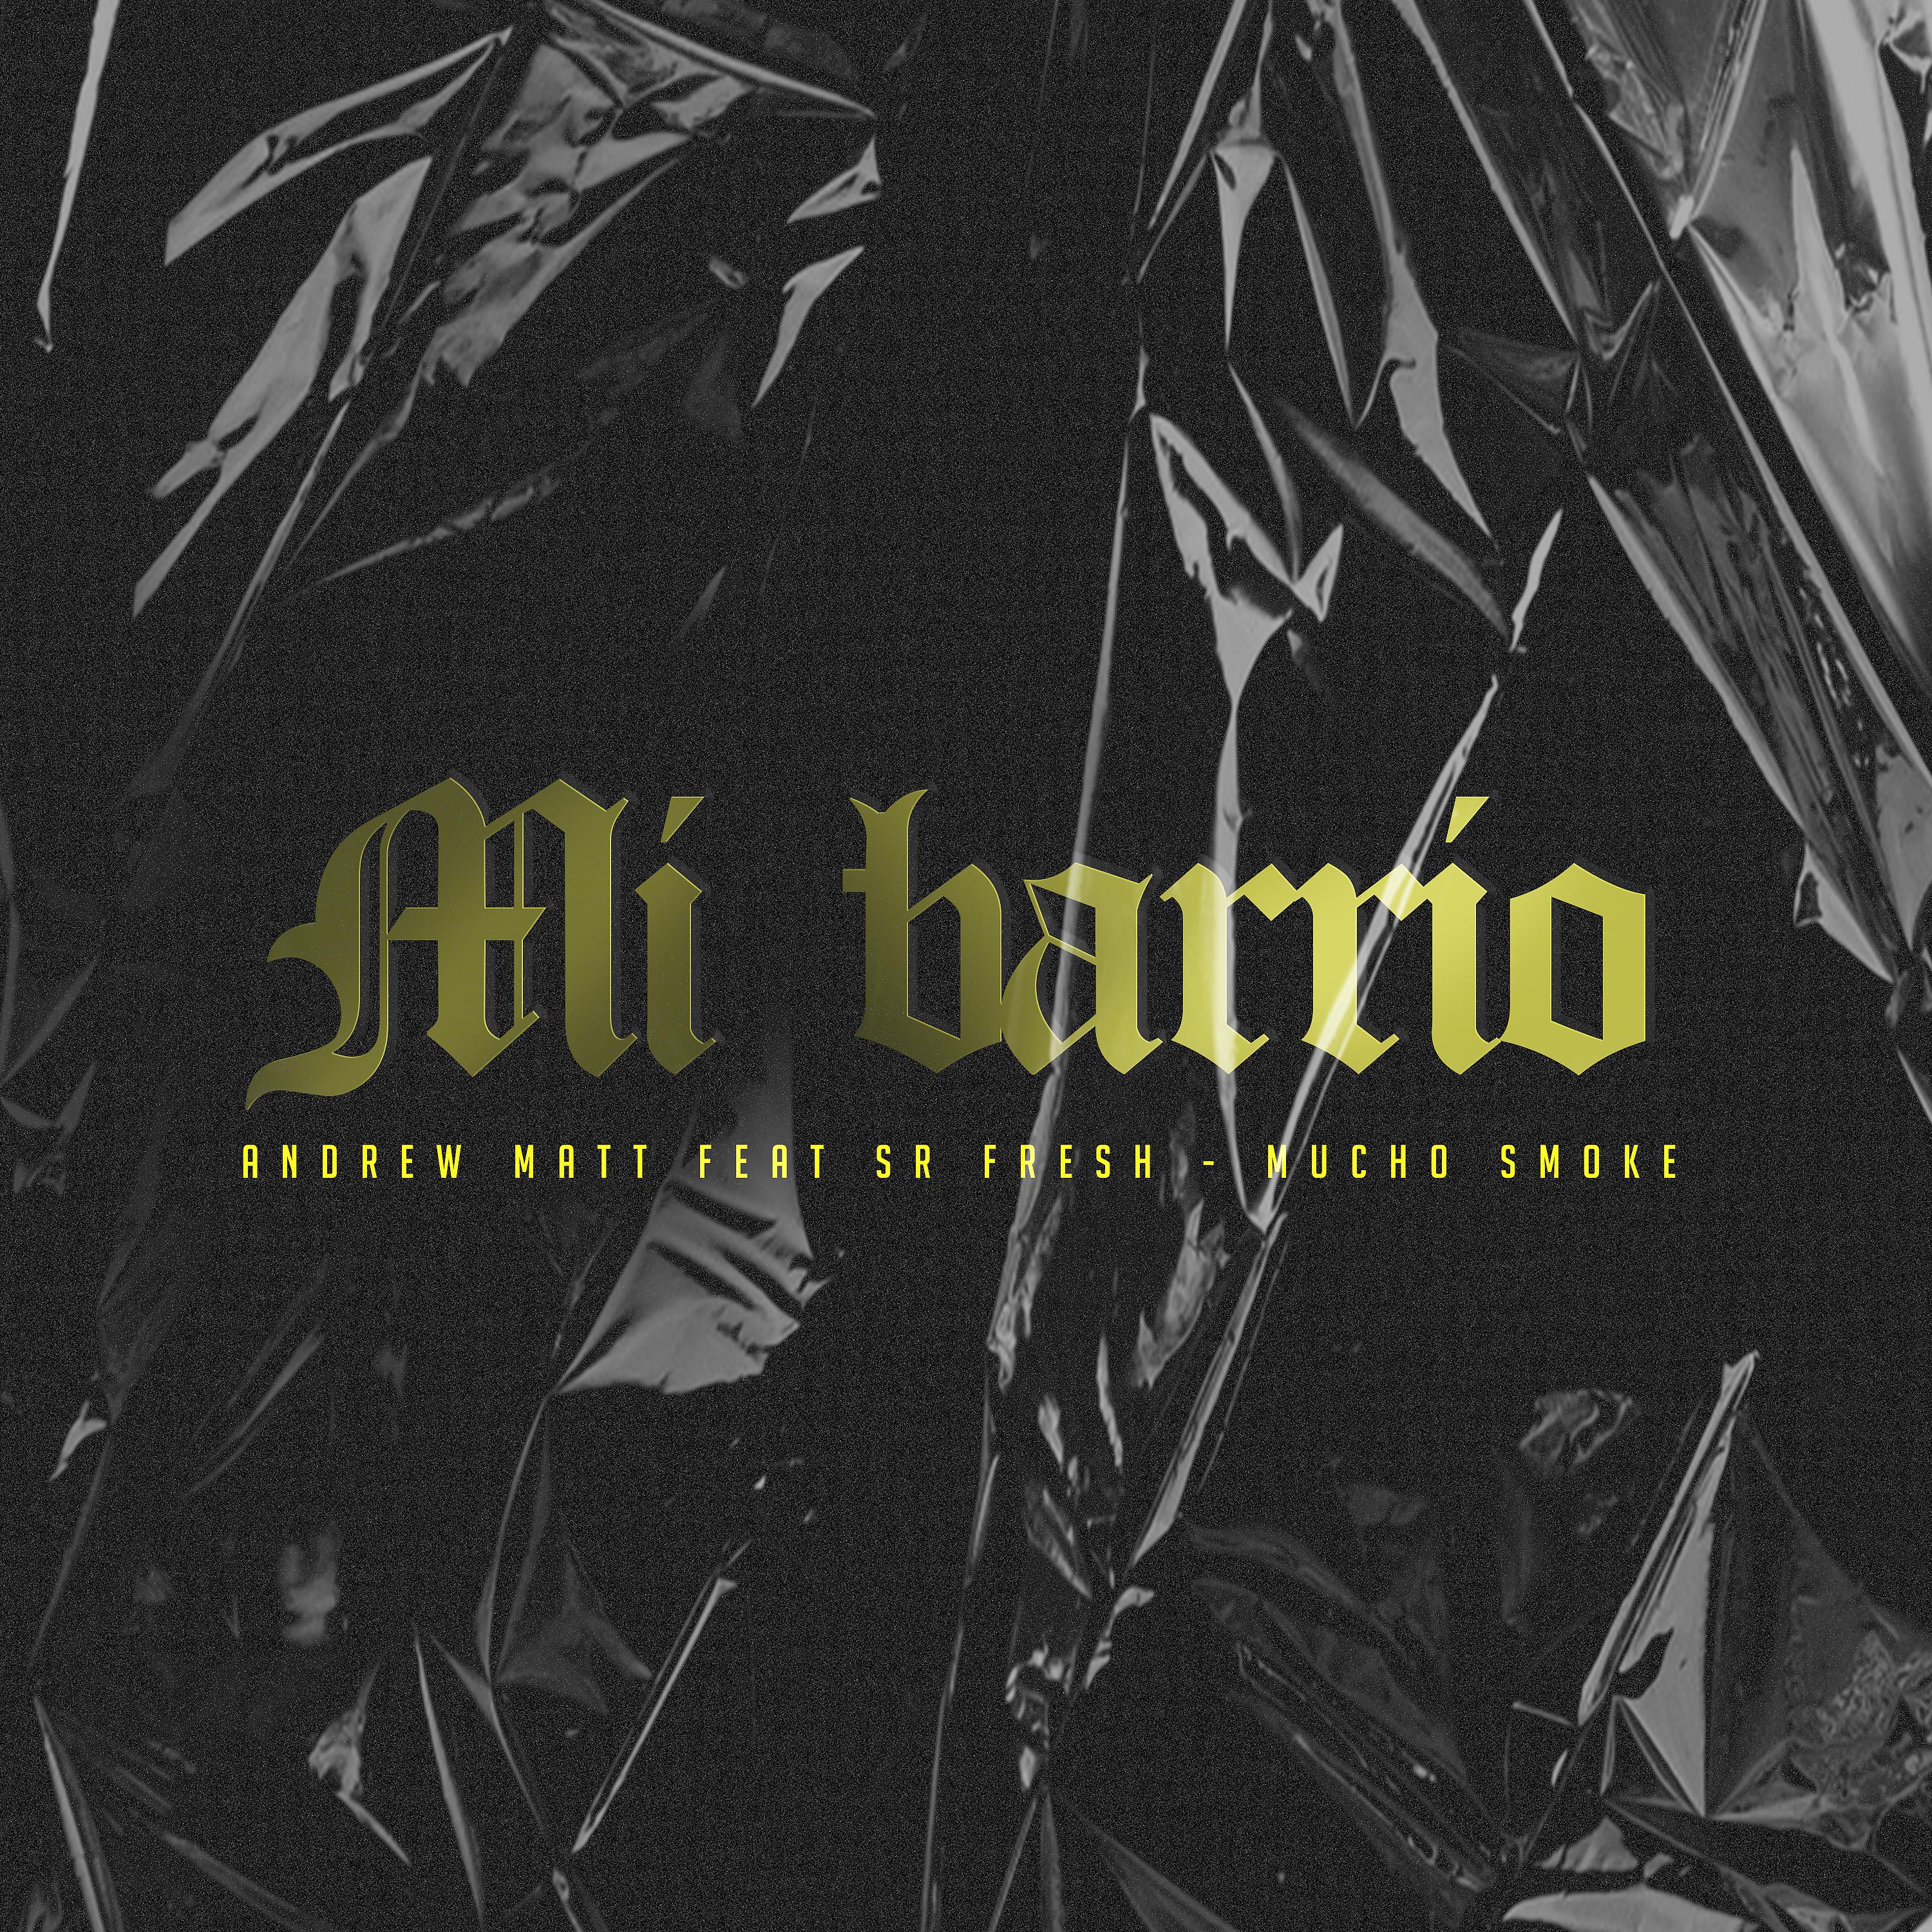 Постер альбома Mi Barrio